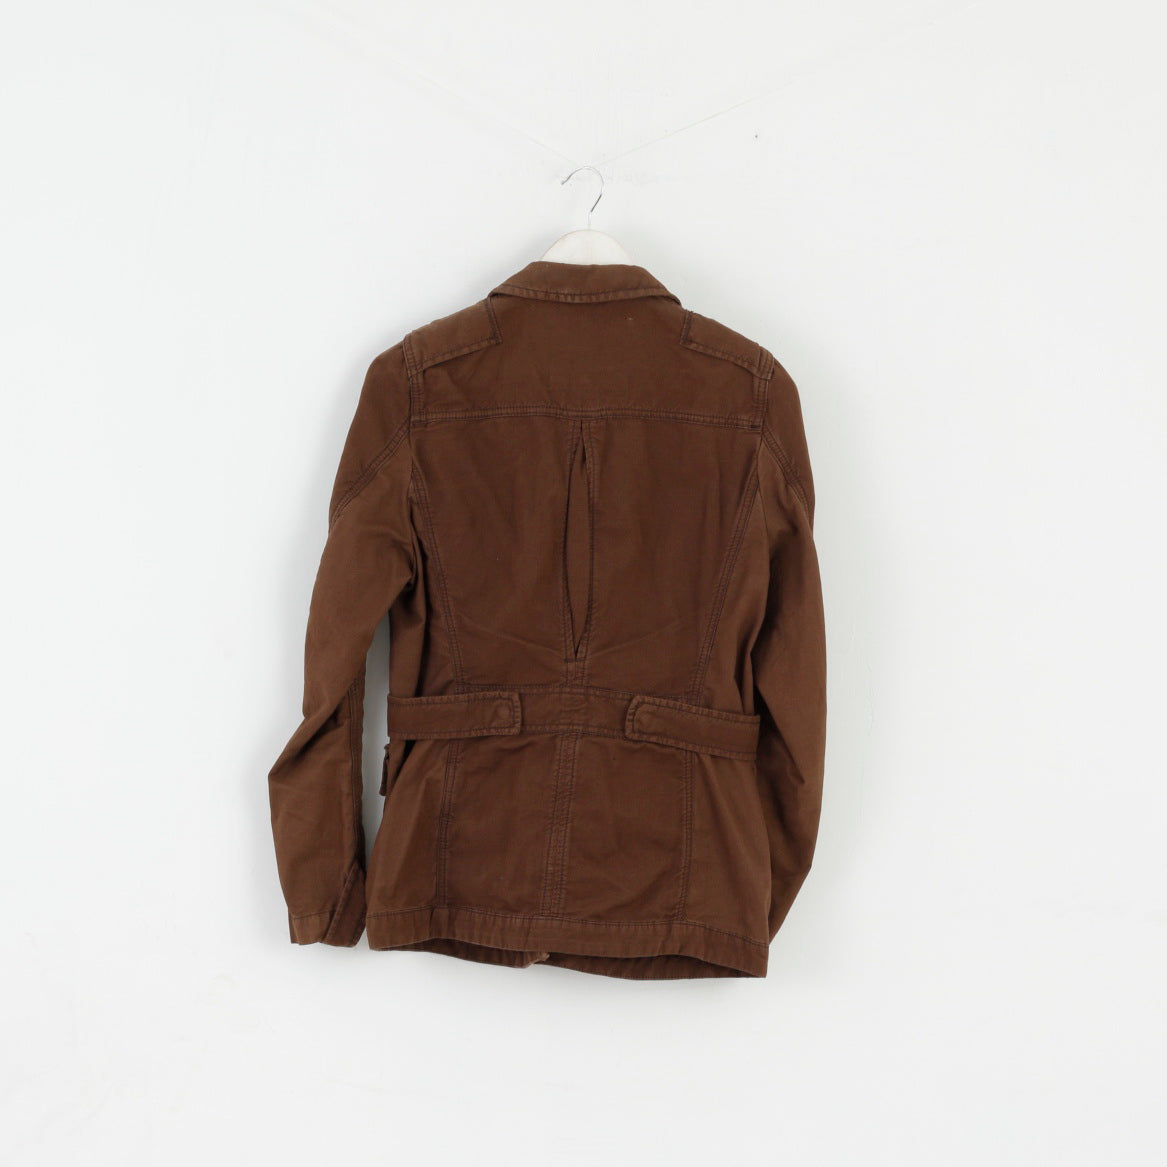 Timberland Women 38 10 S Jacket Brown Cotton Linen Blend Zip Up Top